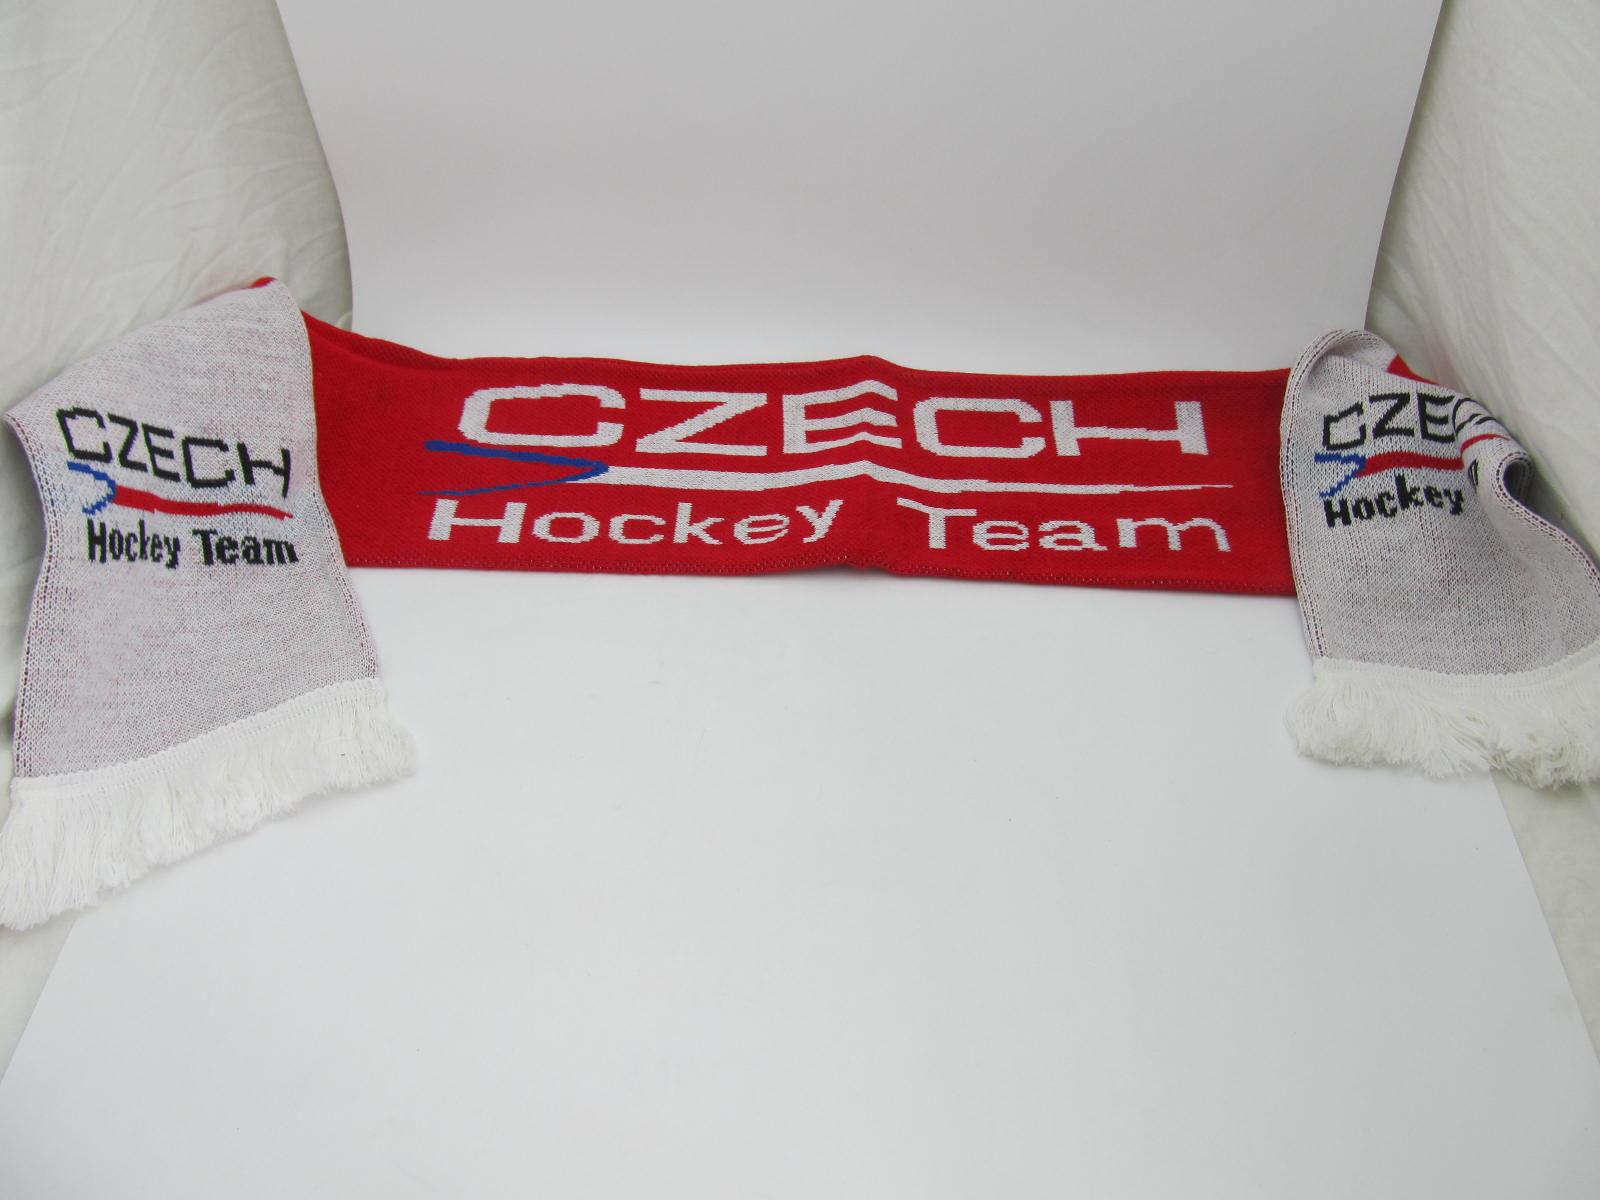 Šála CZECH Hockey team  - Sběratelství